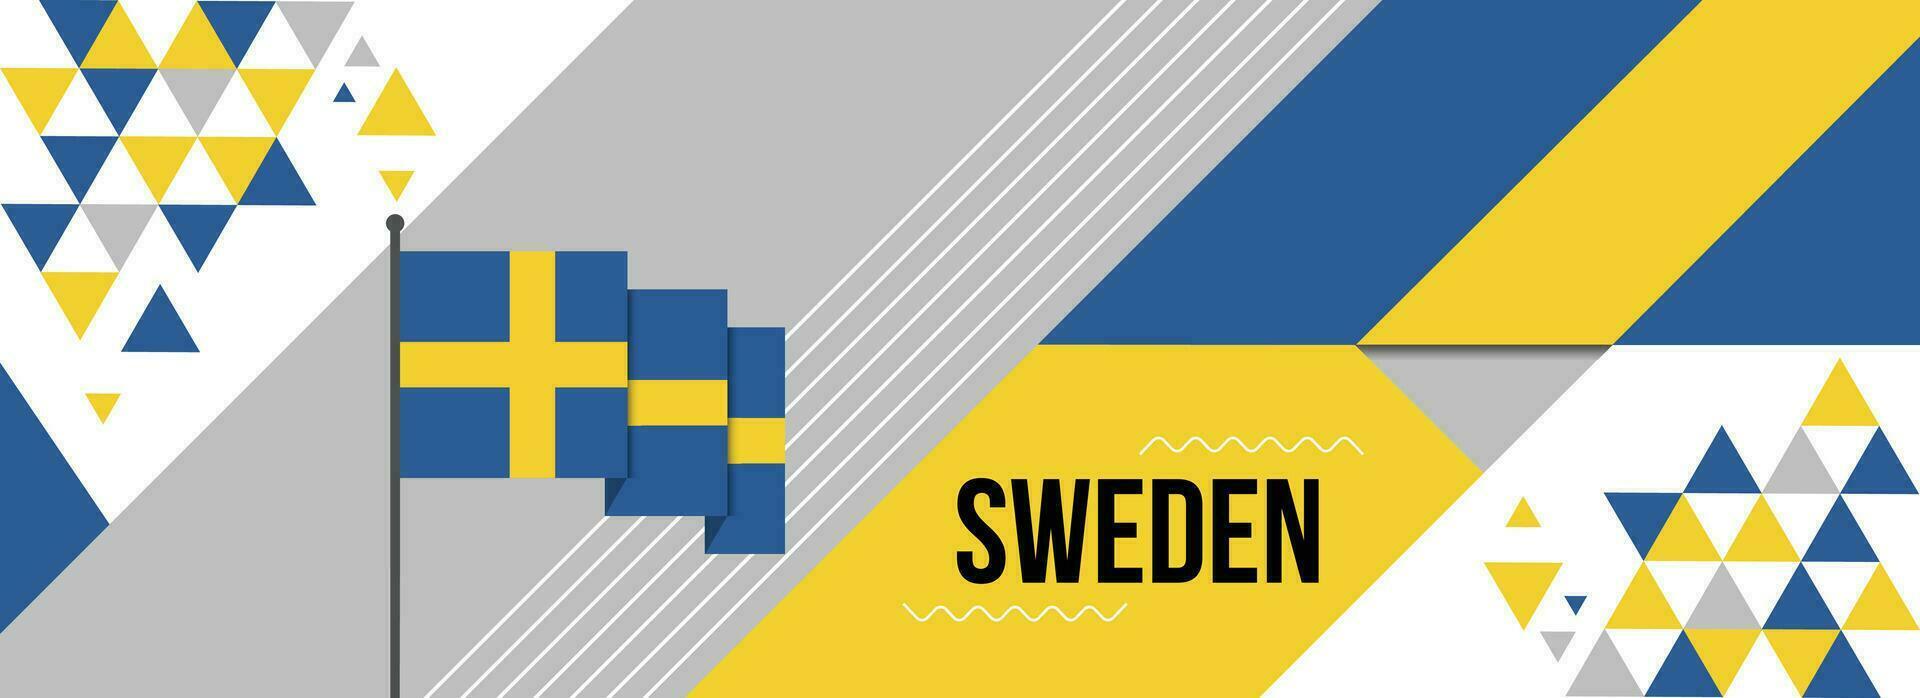 Sverige nationell eller oberoende dag baner design för Land firande. flagga av svenska med modern retro design och abstrakt geometrisk ikoner. vektor illustration